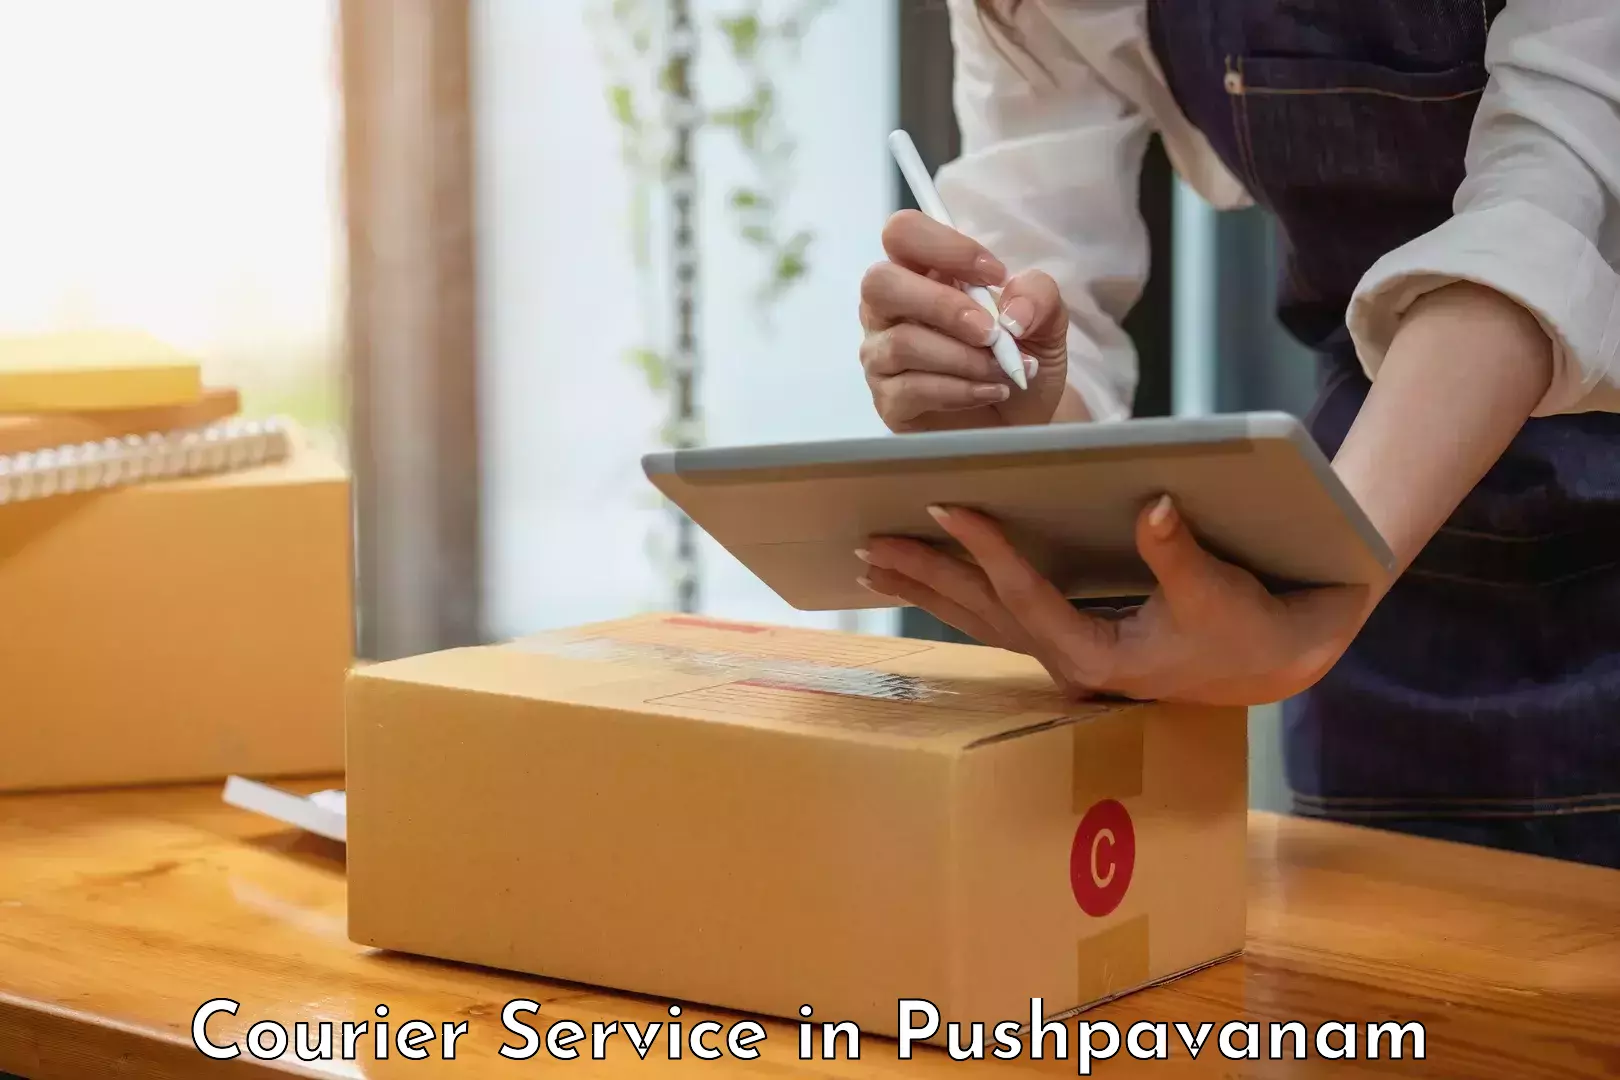 Online package tracking in Pushpavanam